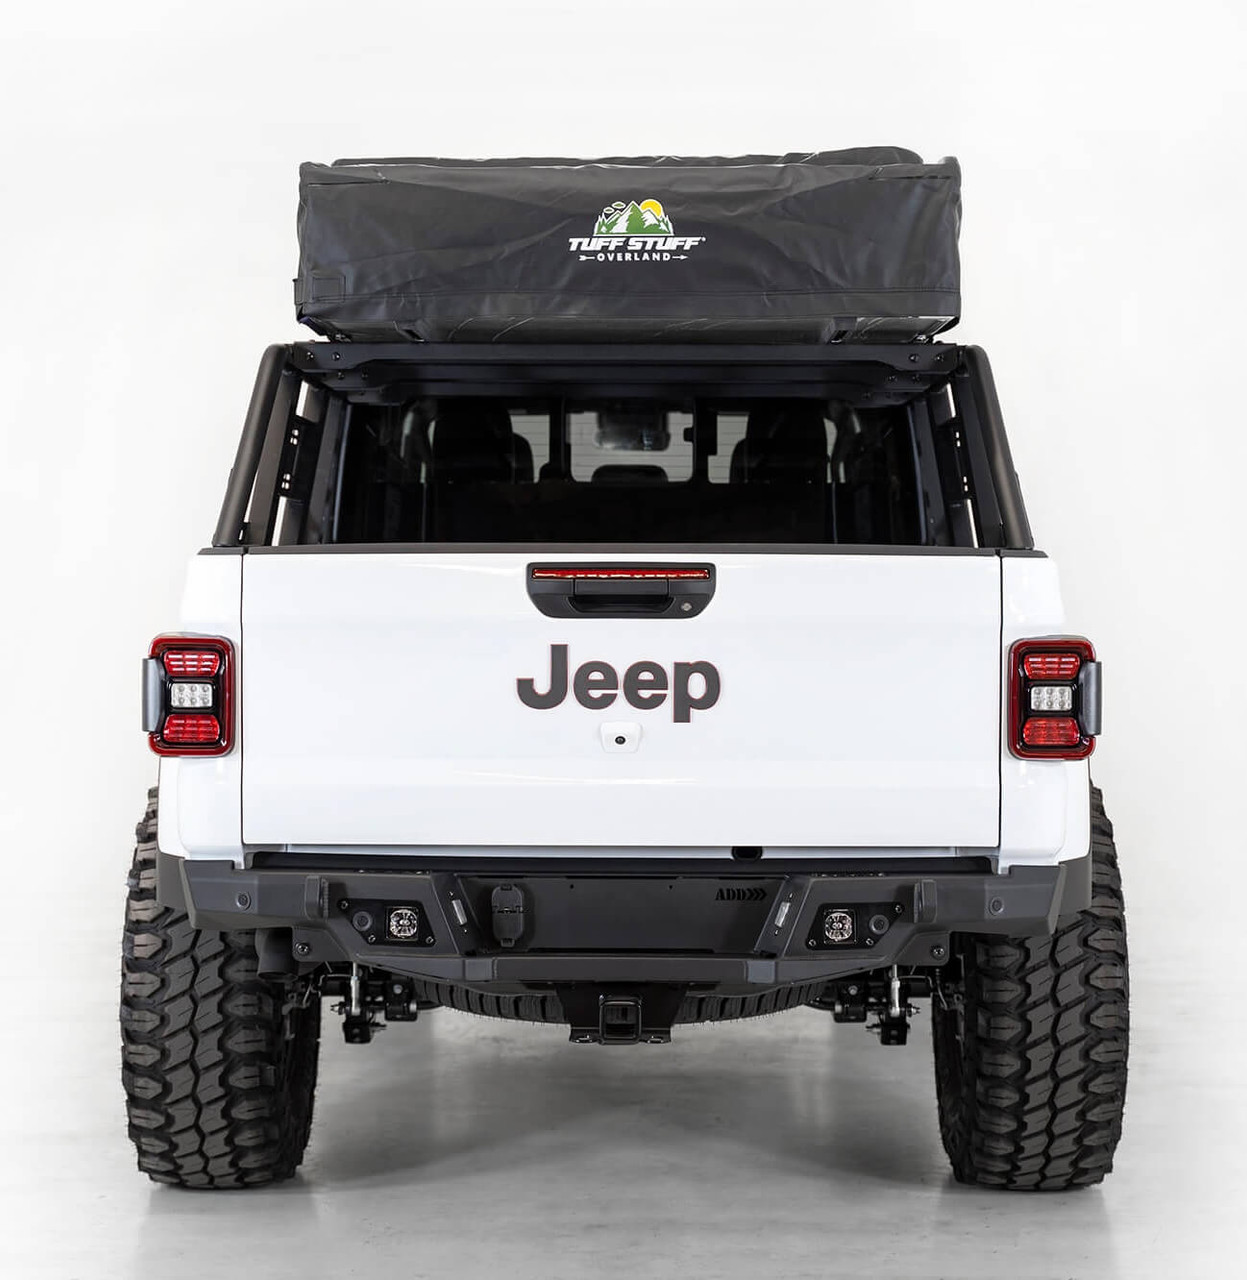 ADD Lander Overland Rack For Jeep Gladiator - C978832000103